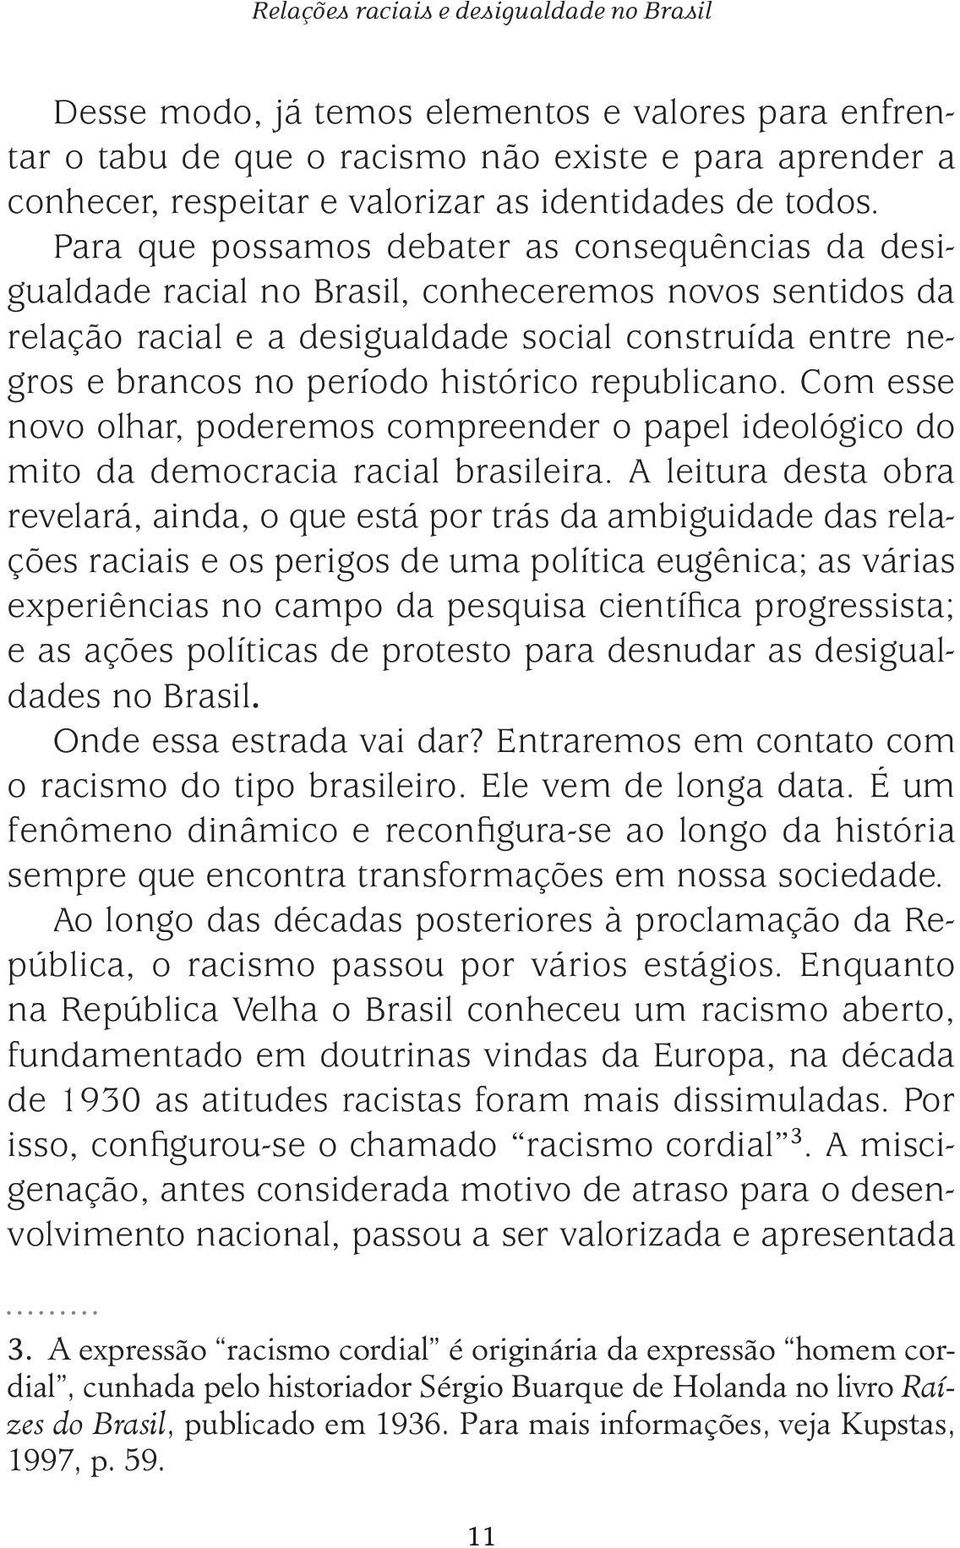 Para que possamos debater as consequências da desigualdade racial no Brasil, conheceremos novos sentidos da relação racial e a desigualdade social construída entre negros e brancos no período